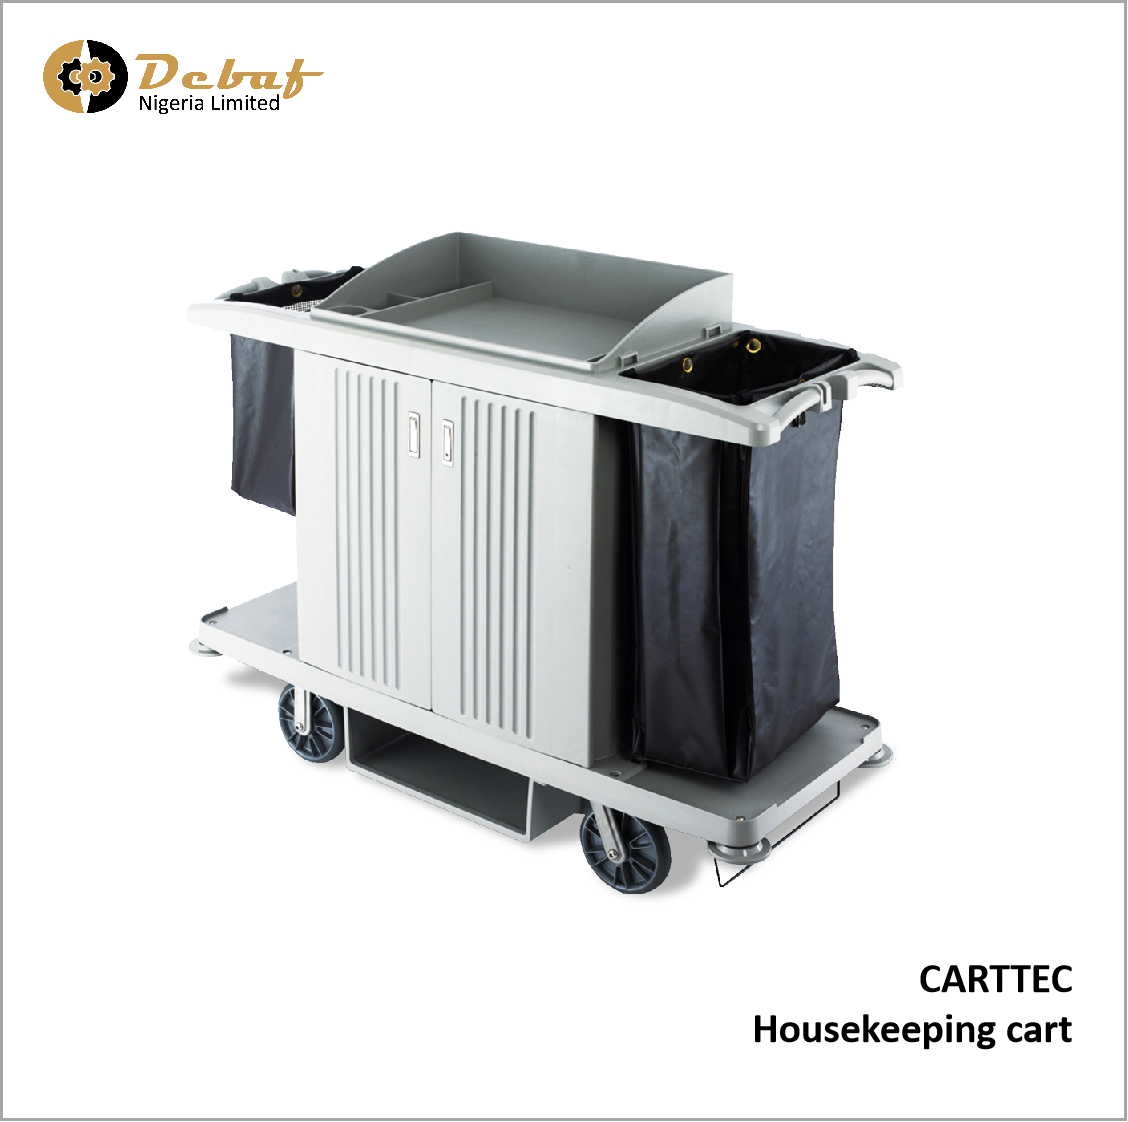 Debaf - CARTTEC Housekeeping cart